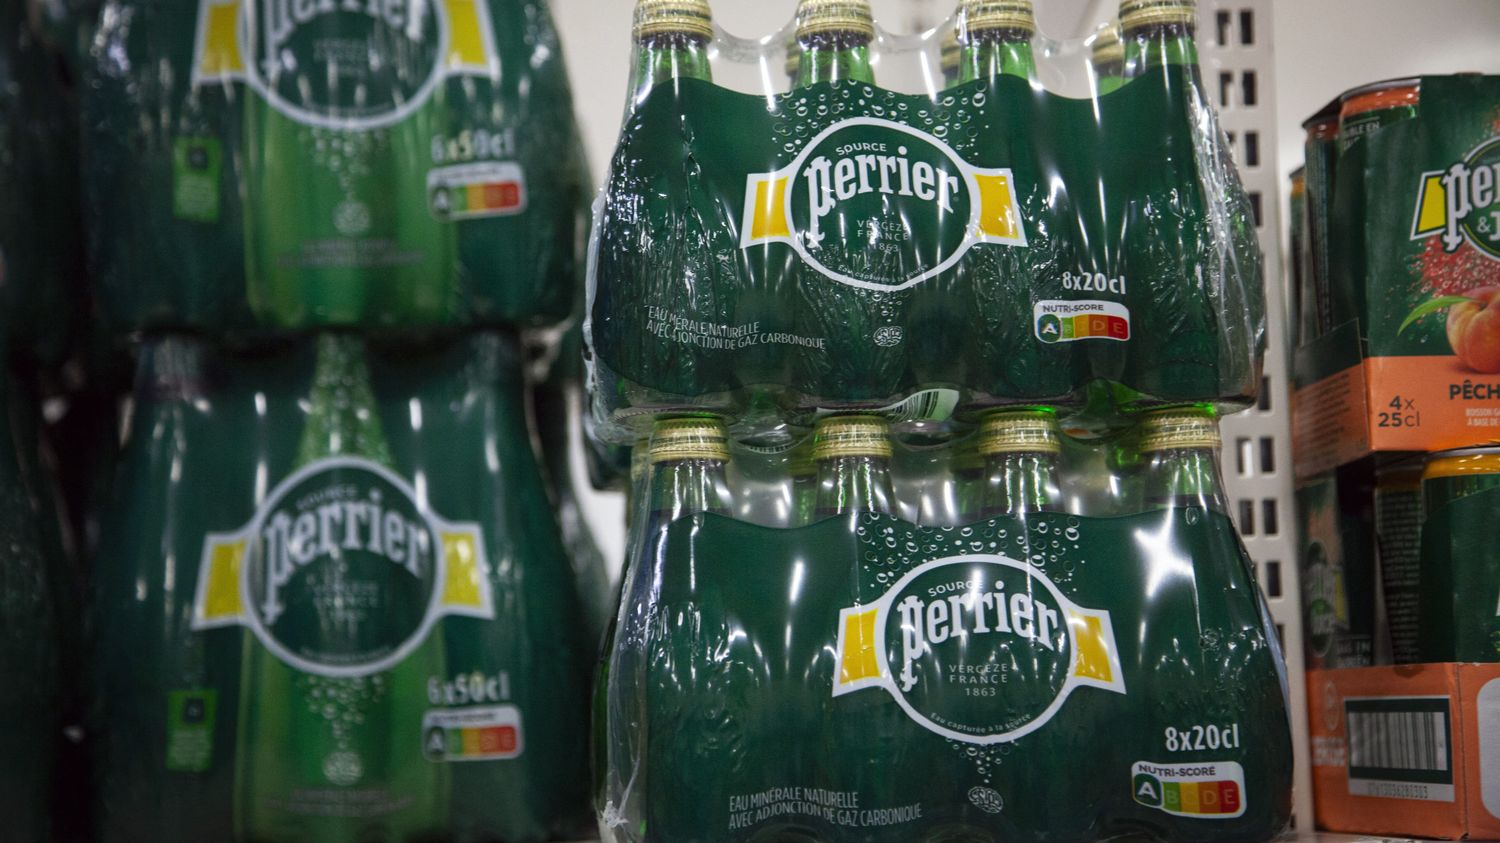 Nestlé ha distrutto parte della sua produzione d'acqua a Perrier come “misura precauzionale” dopo forti piogge.